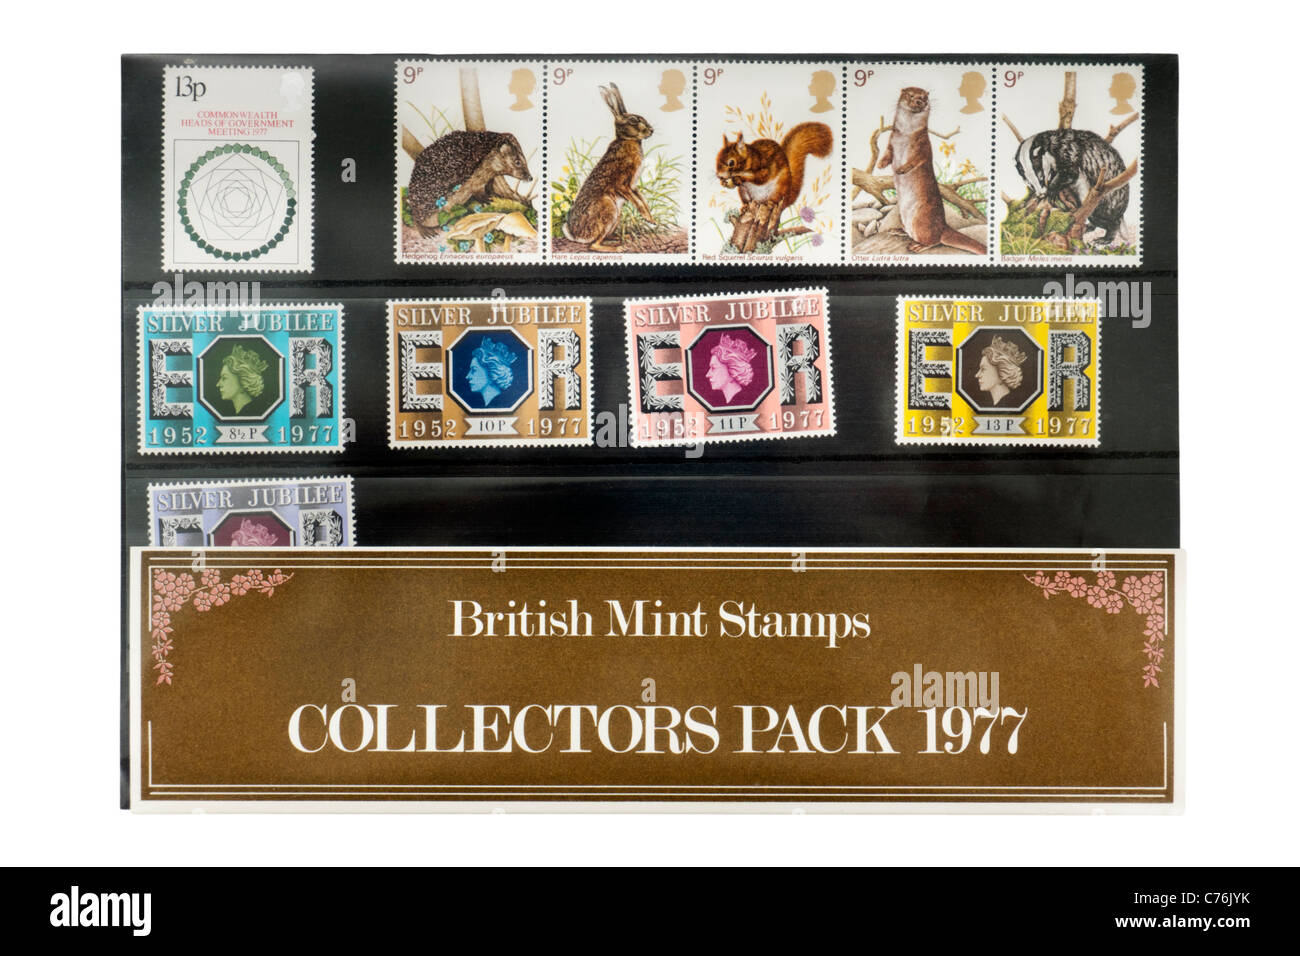 1977 Royal Mail Collectors Pack avec timbres commémorant le jubilé d'argent de Sa Majesté la Reine Elizabeth II Banque D'Images